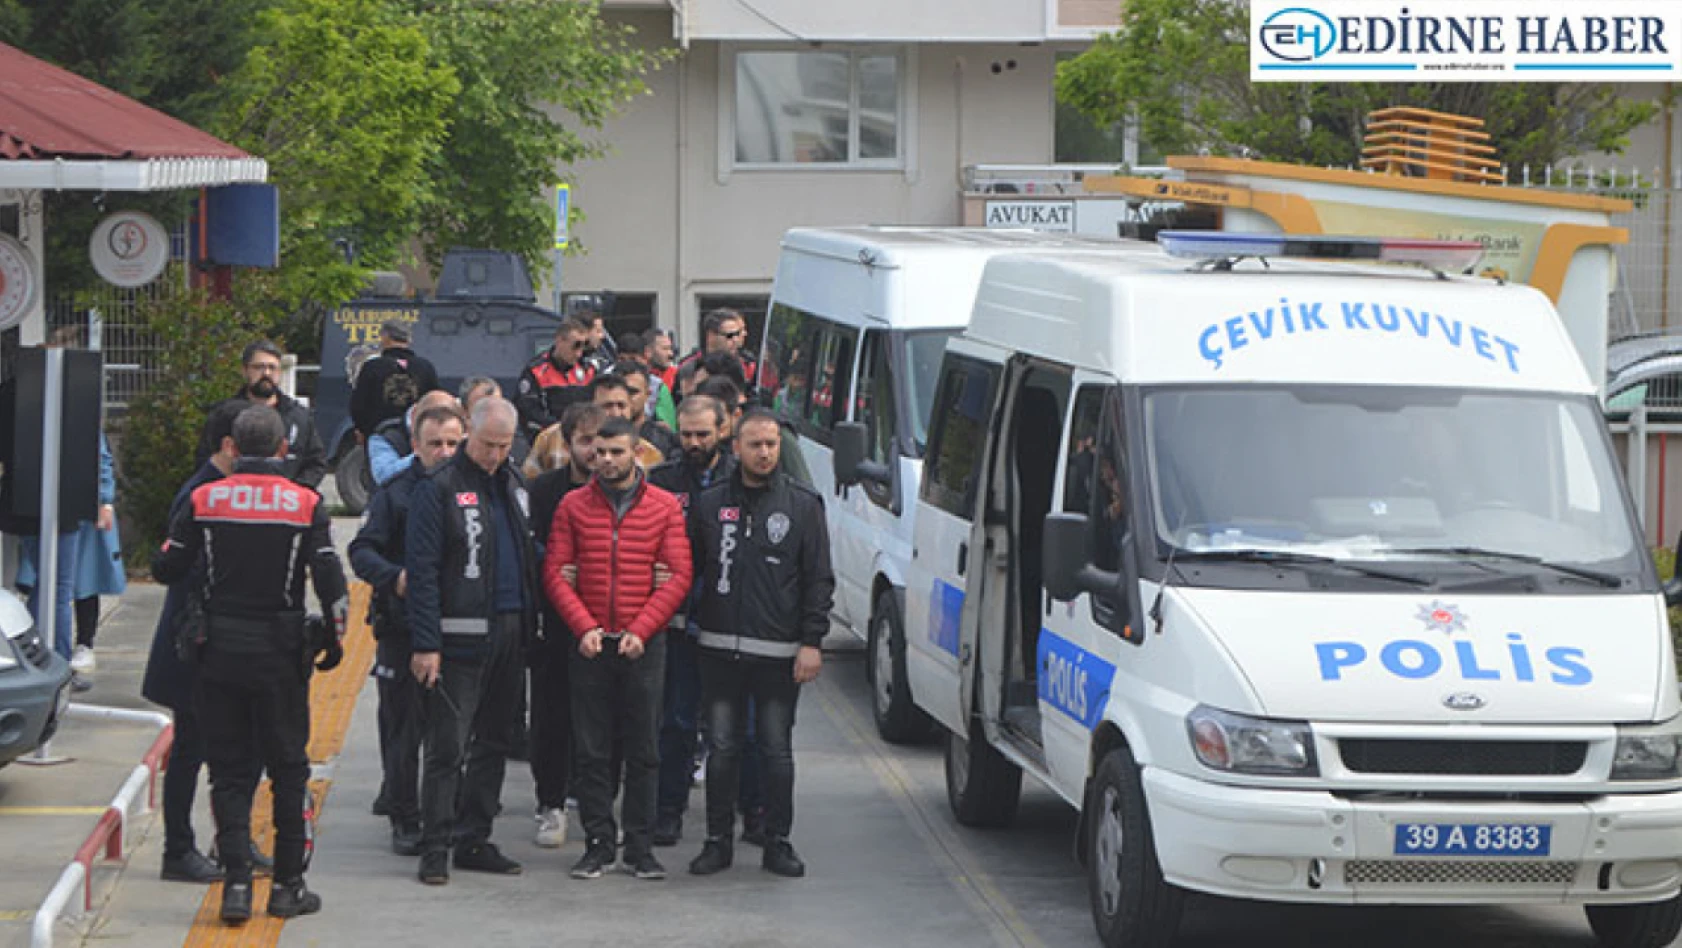 Kırklareli'nde silahlı kavgaya ilişkin gözaltına alınan 17 kişiden 5'i tutuklandı